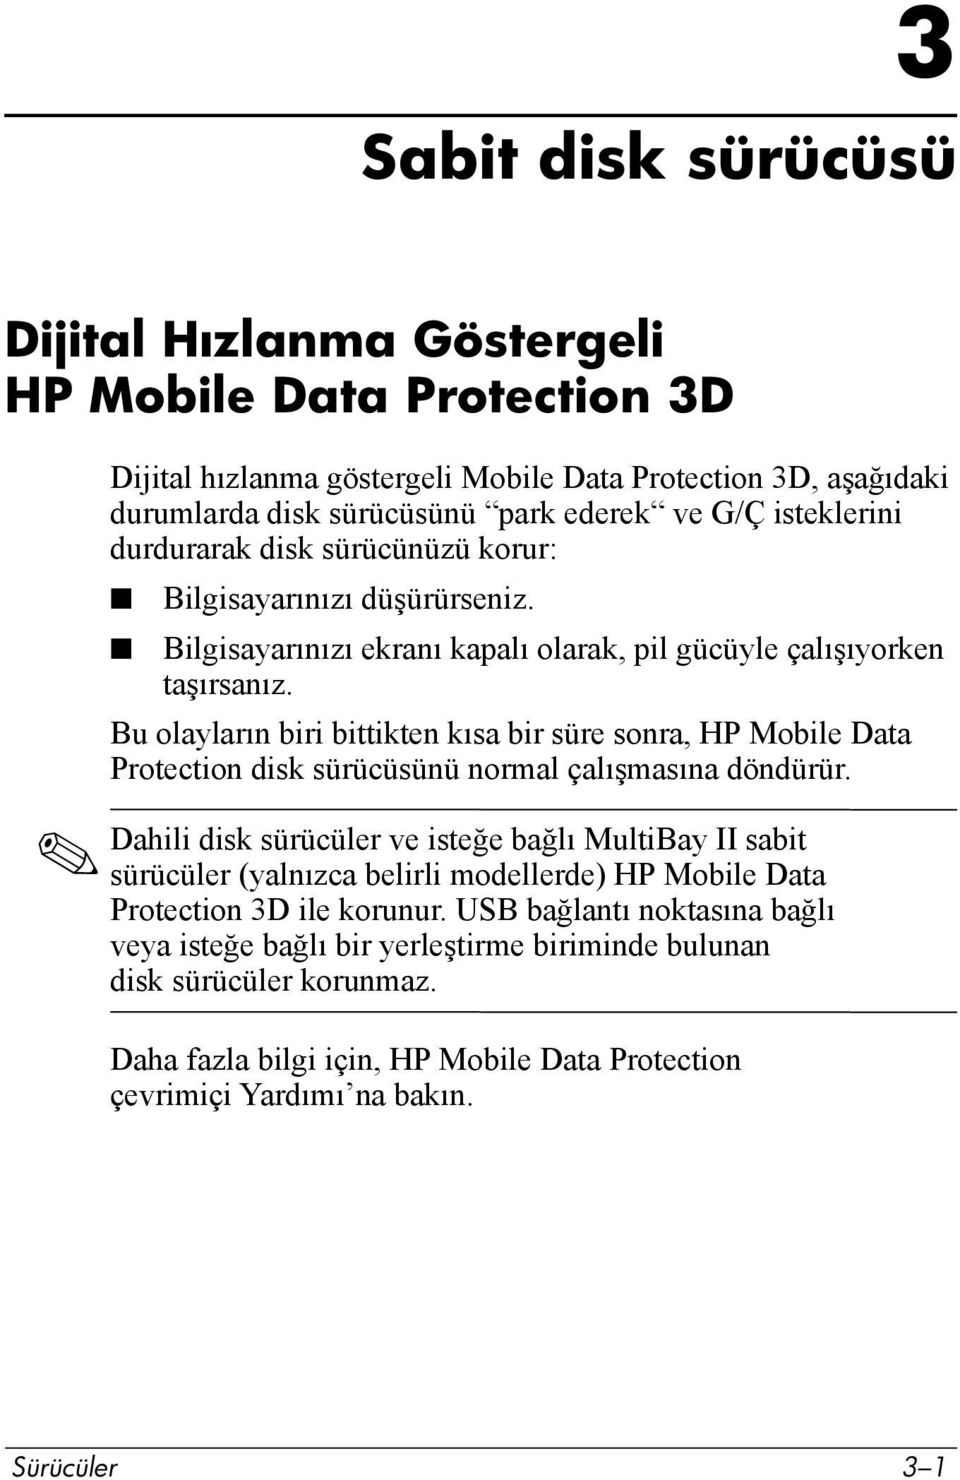 Bu olaylarõn biri bittikten kõsa bir süre sonra, HP Mobile Data Protection disk sürücüsünü normal çalõşmasõna döndürür.